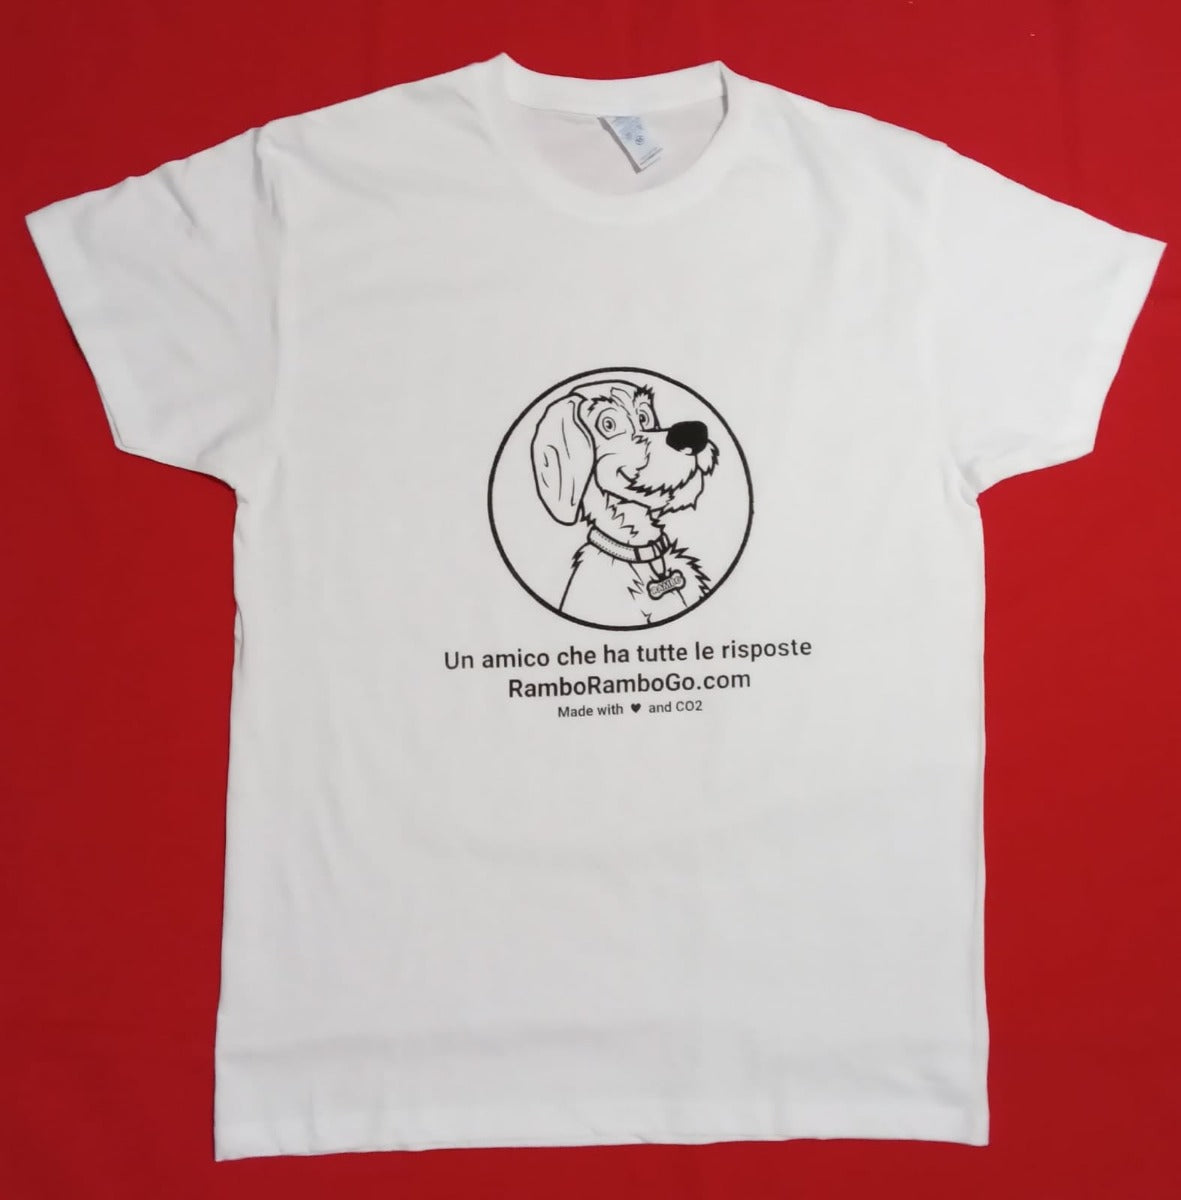 RamboRamboGo t-shirt made with CO2